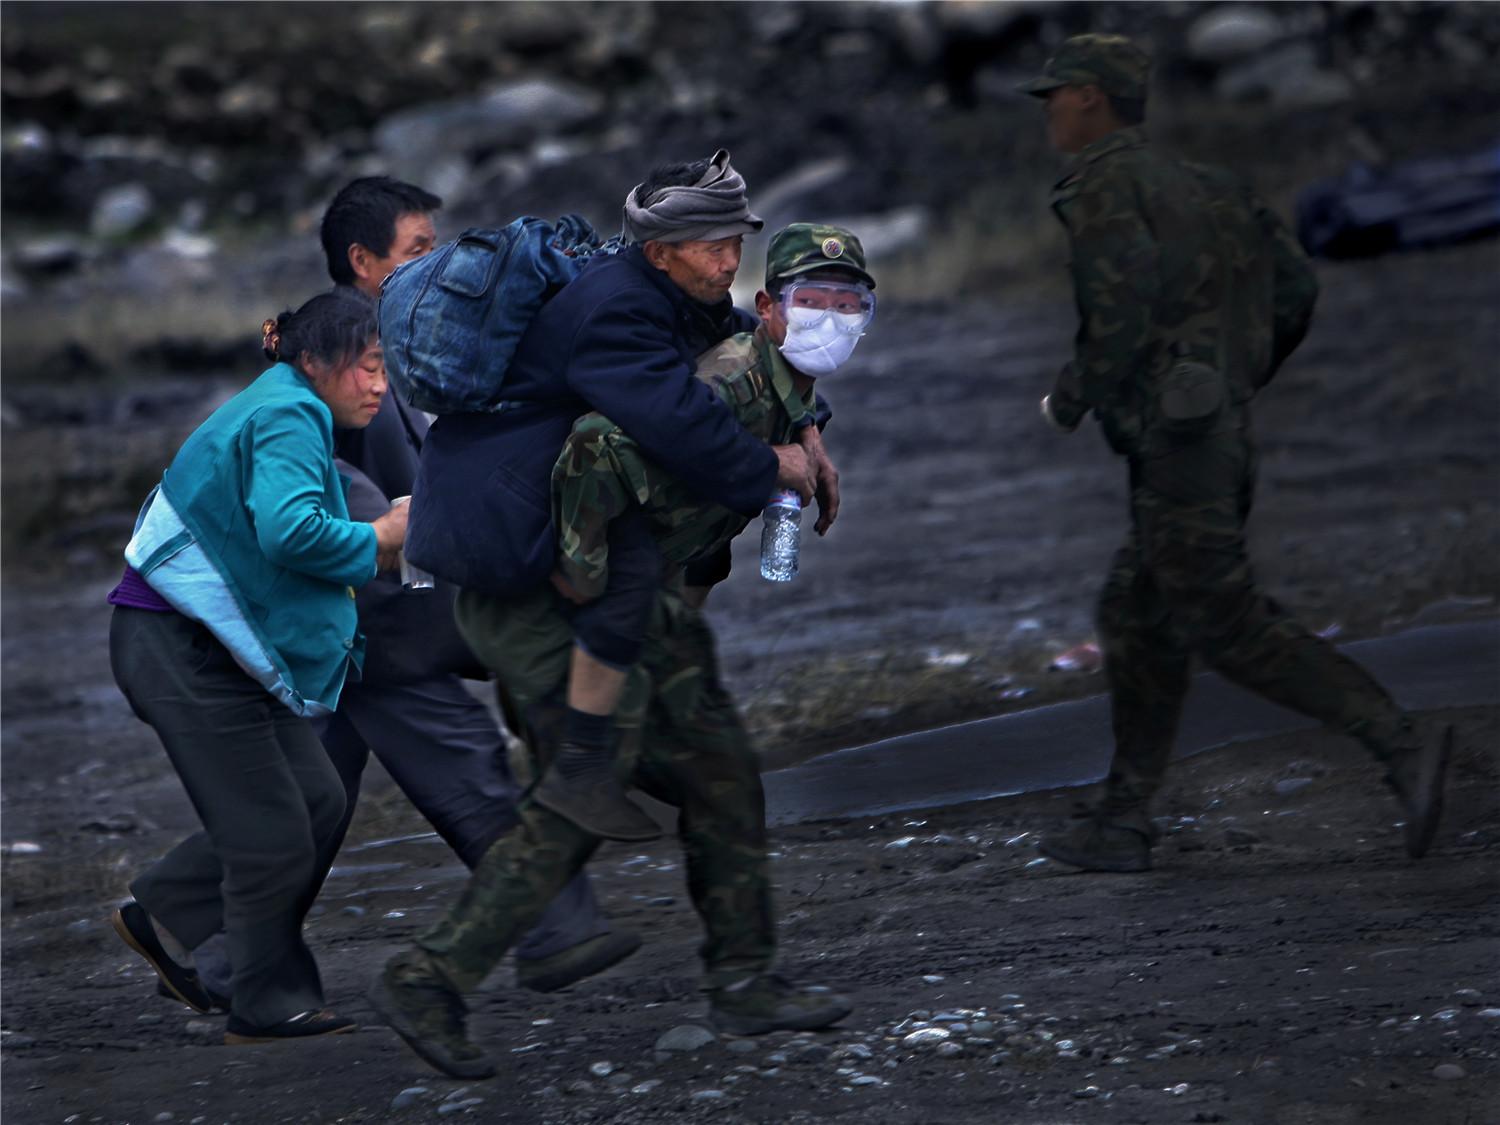 亲历汶川地震救灾摄影师公开采访手记，大量灾区照片首曝